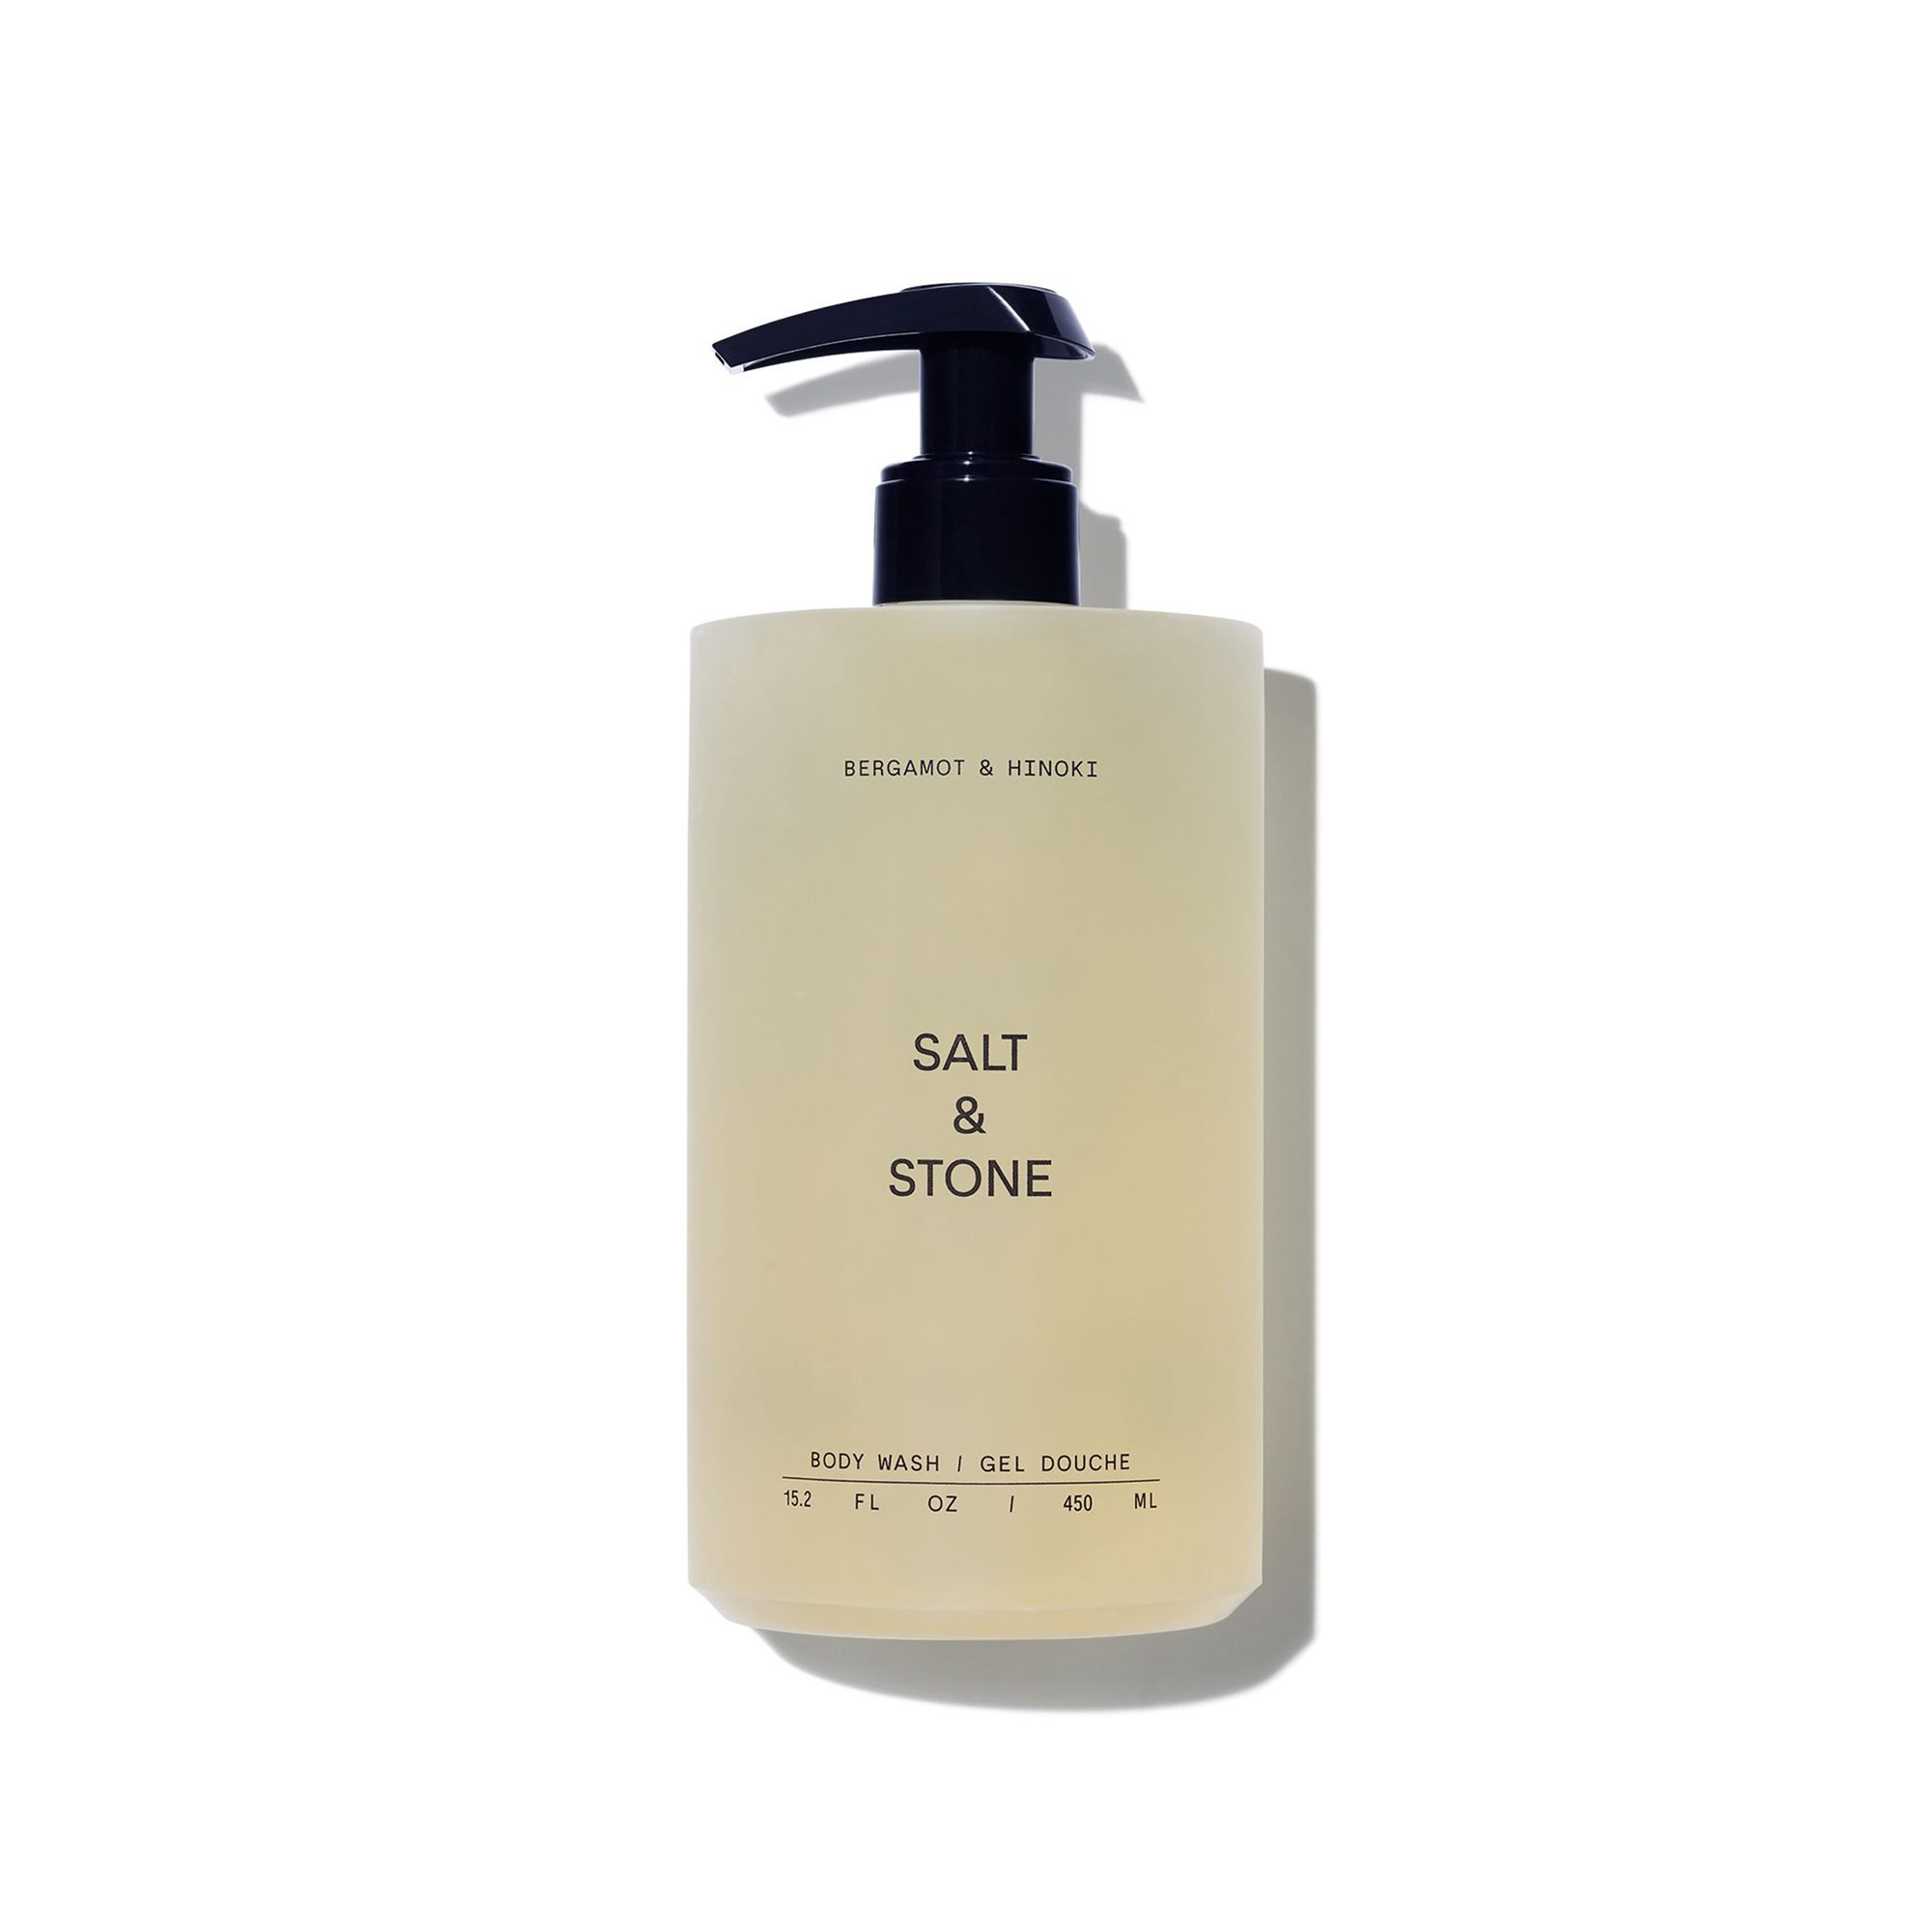 Salt & Stone - Bergamot & hinoki tusfürdő